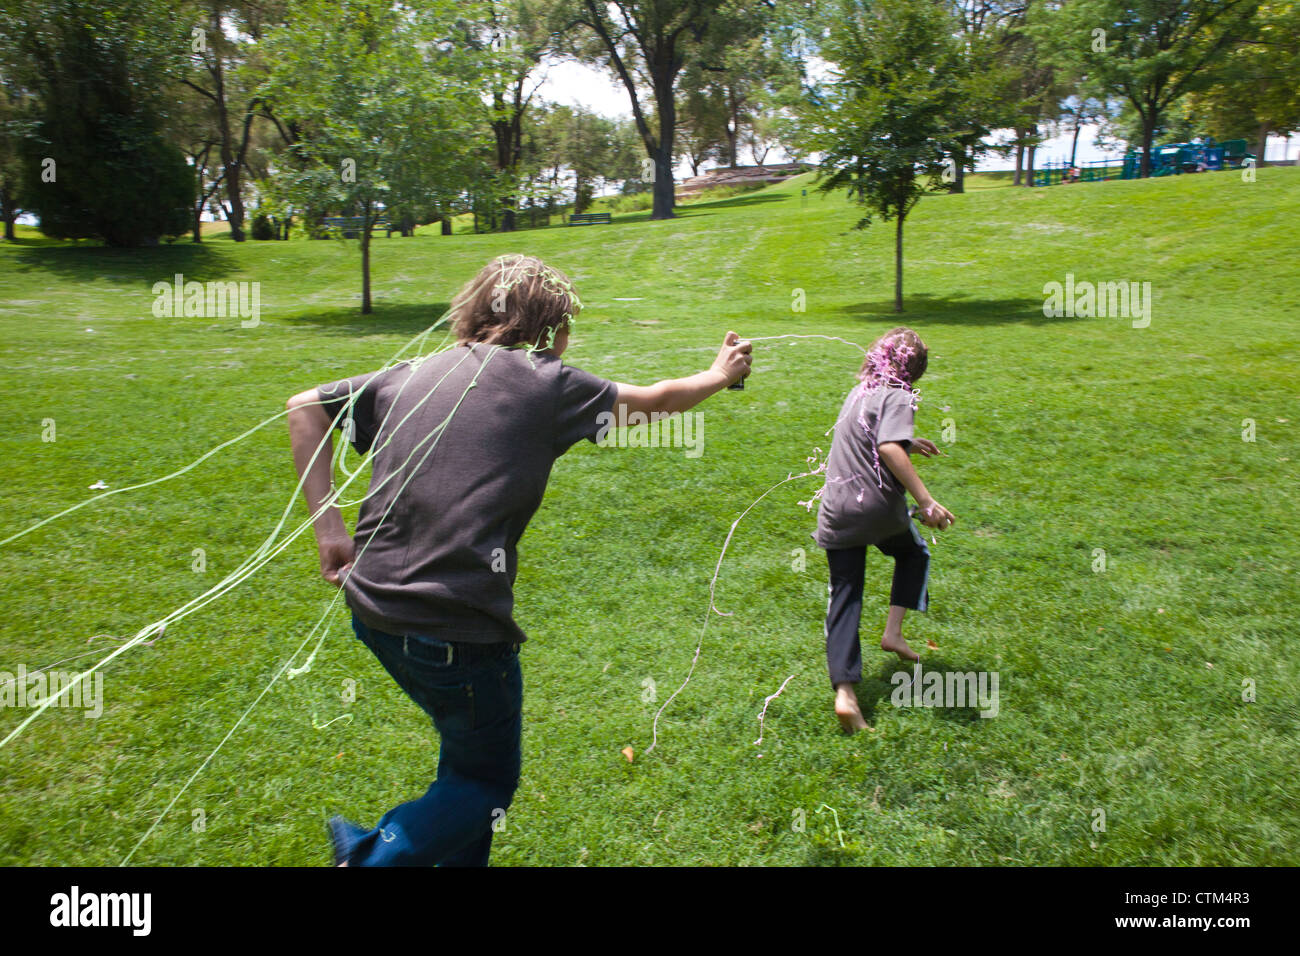 13 Jahre alter Junge jagt jüngerer Bruder mit einer Dose Silly String spray - Latex String in einem Park. Stockfoto